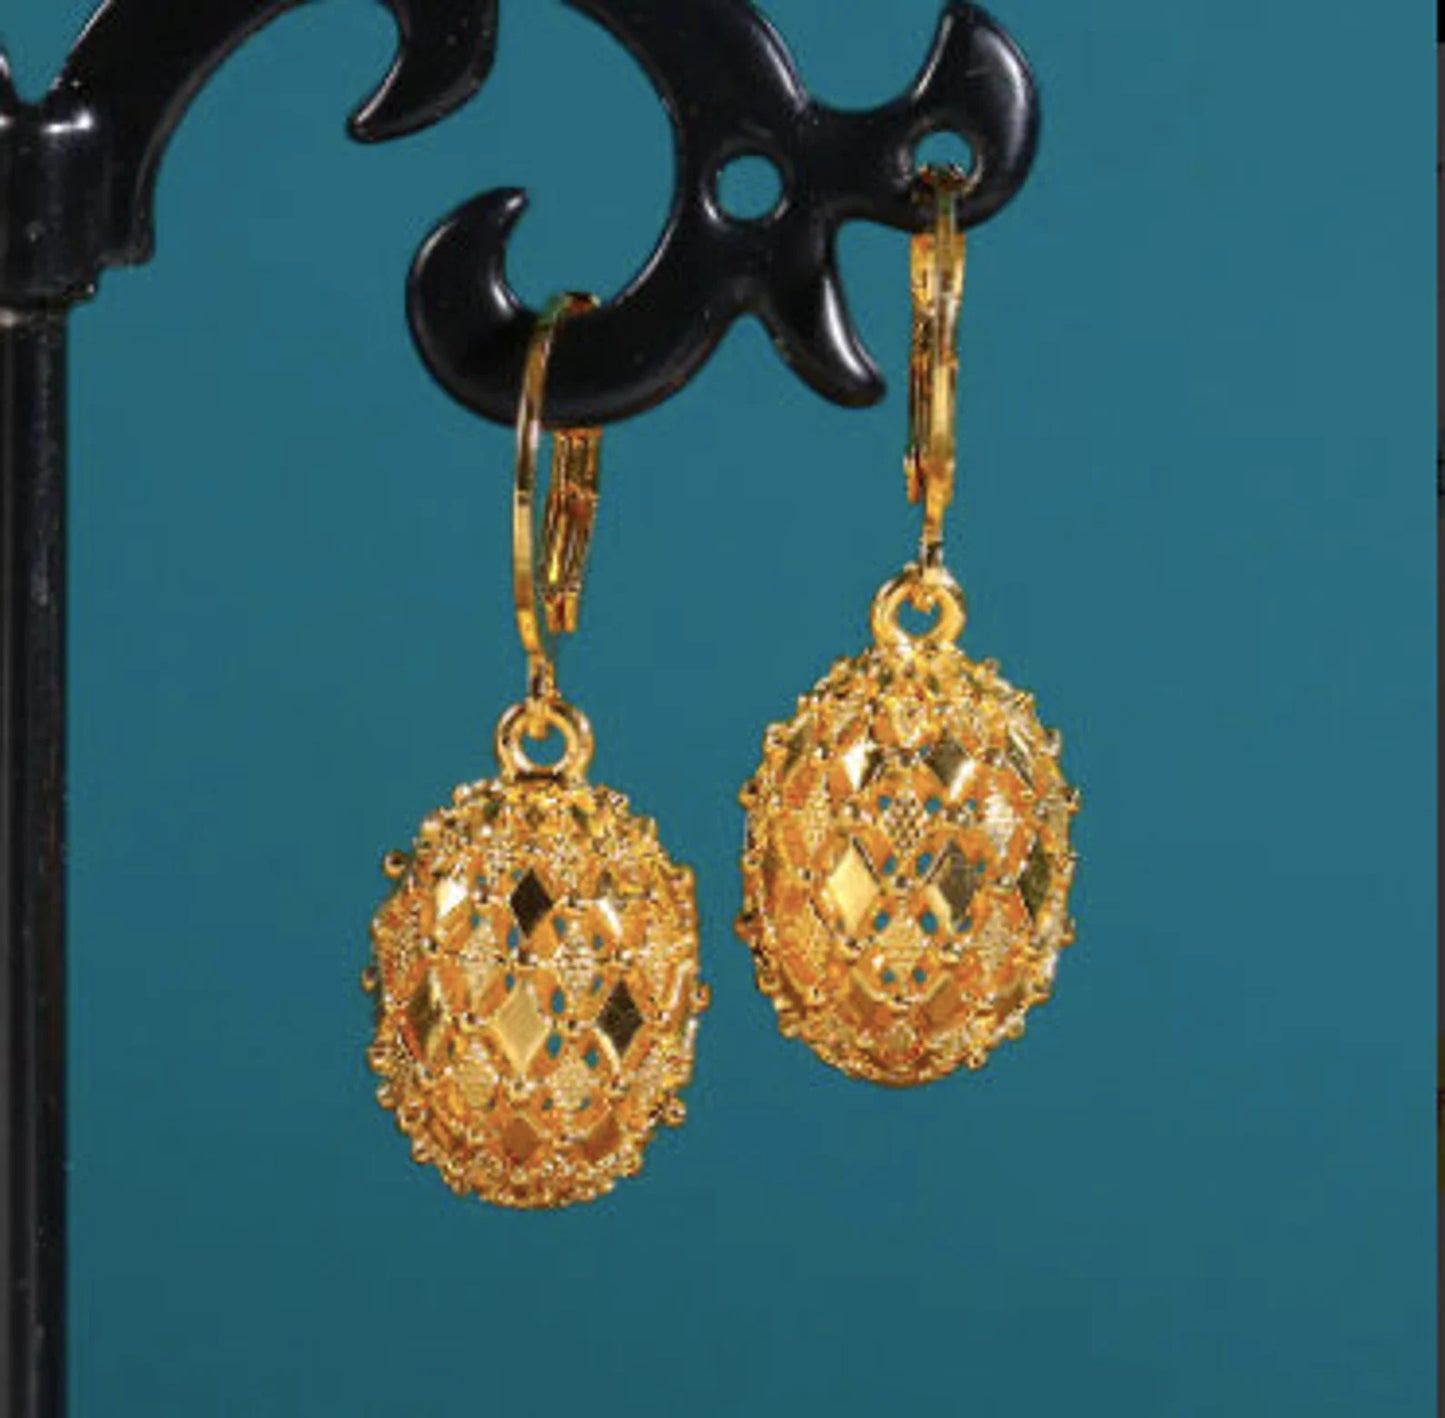 Intricate Gold Lantern Earrings